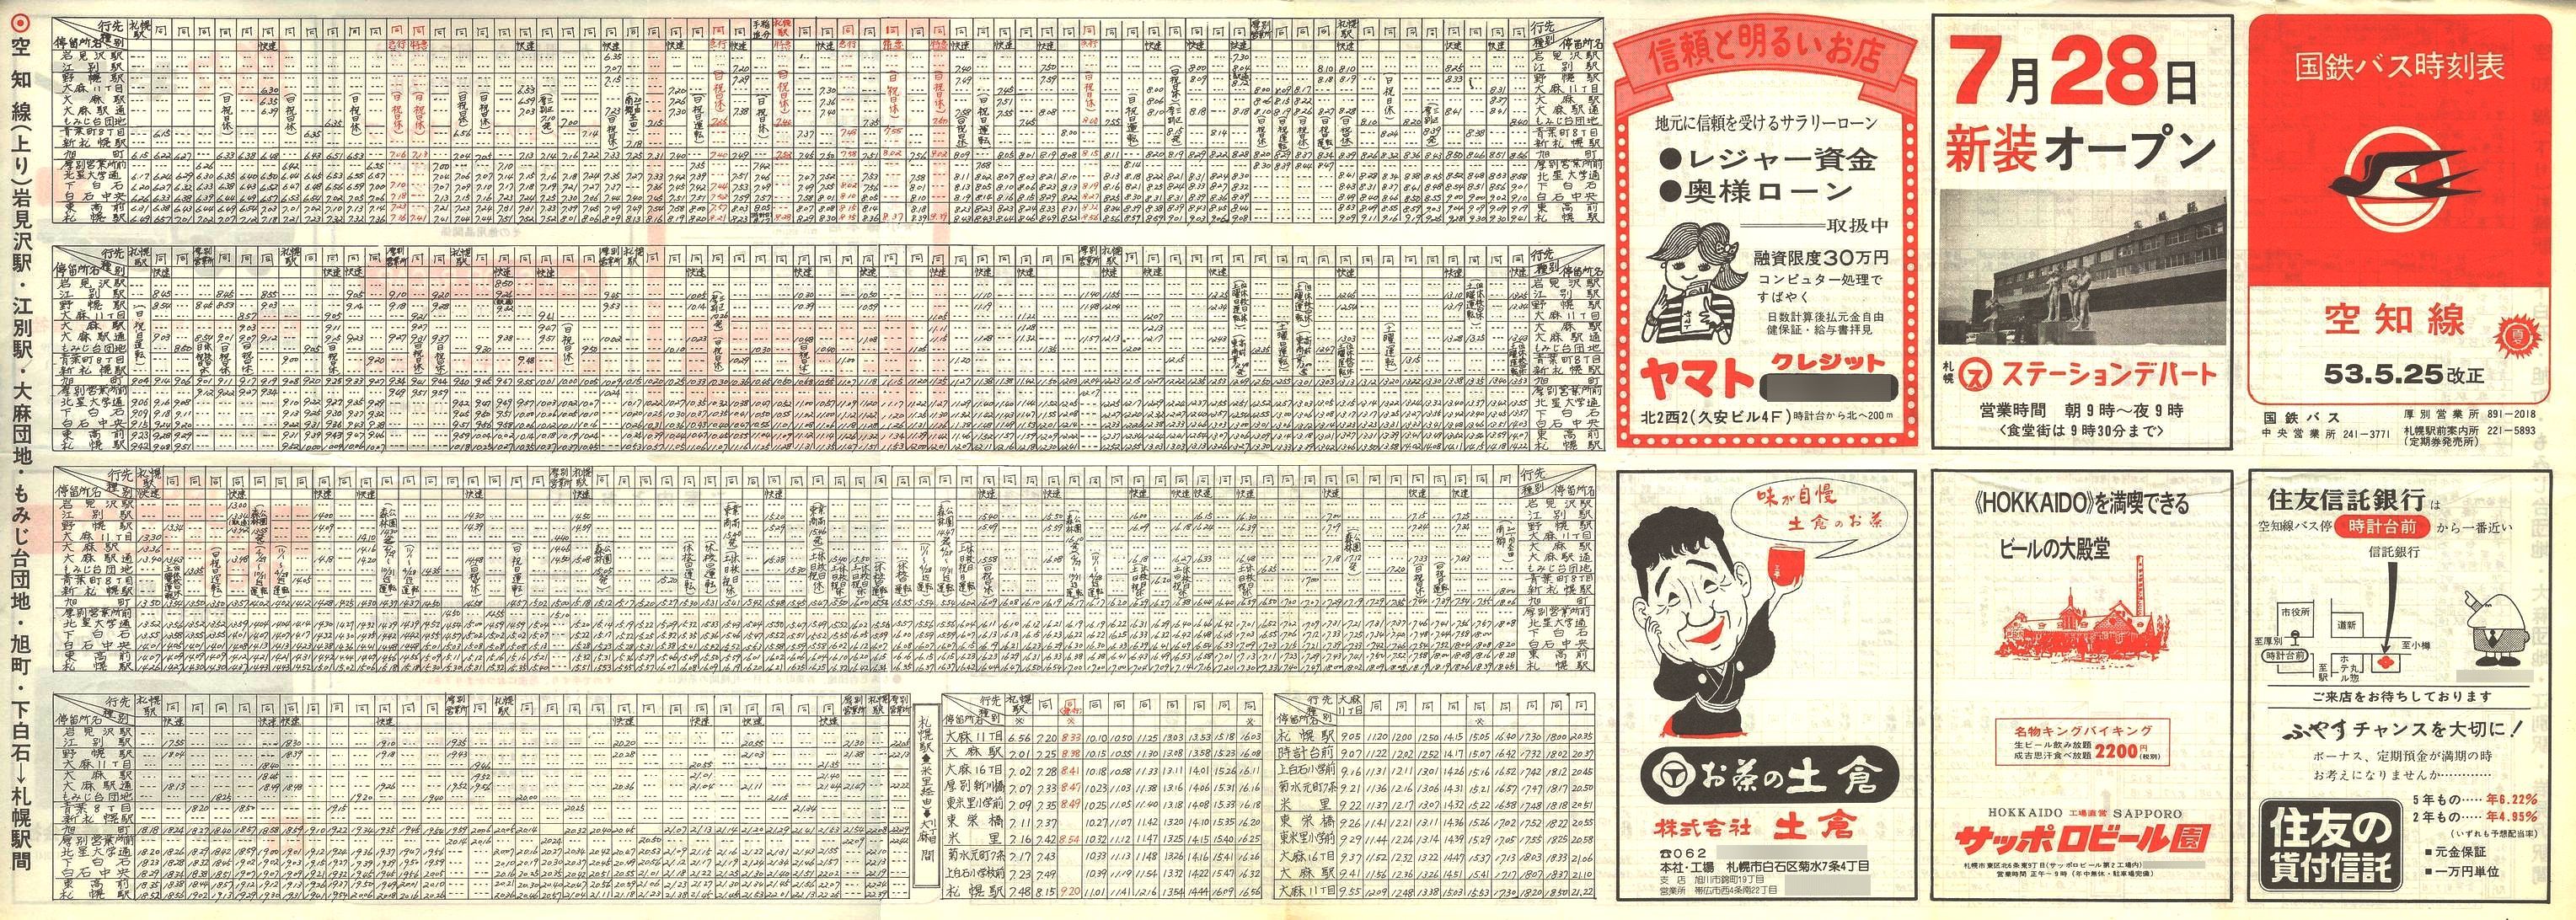 1978-05-25改正_国鉄バス_空知線時刻表表面